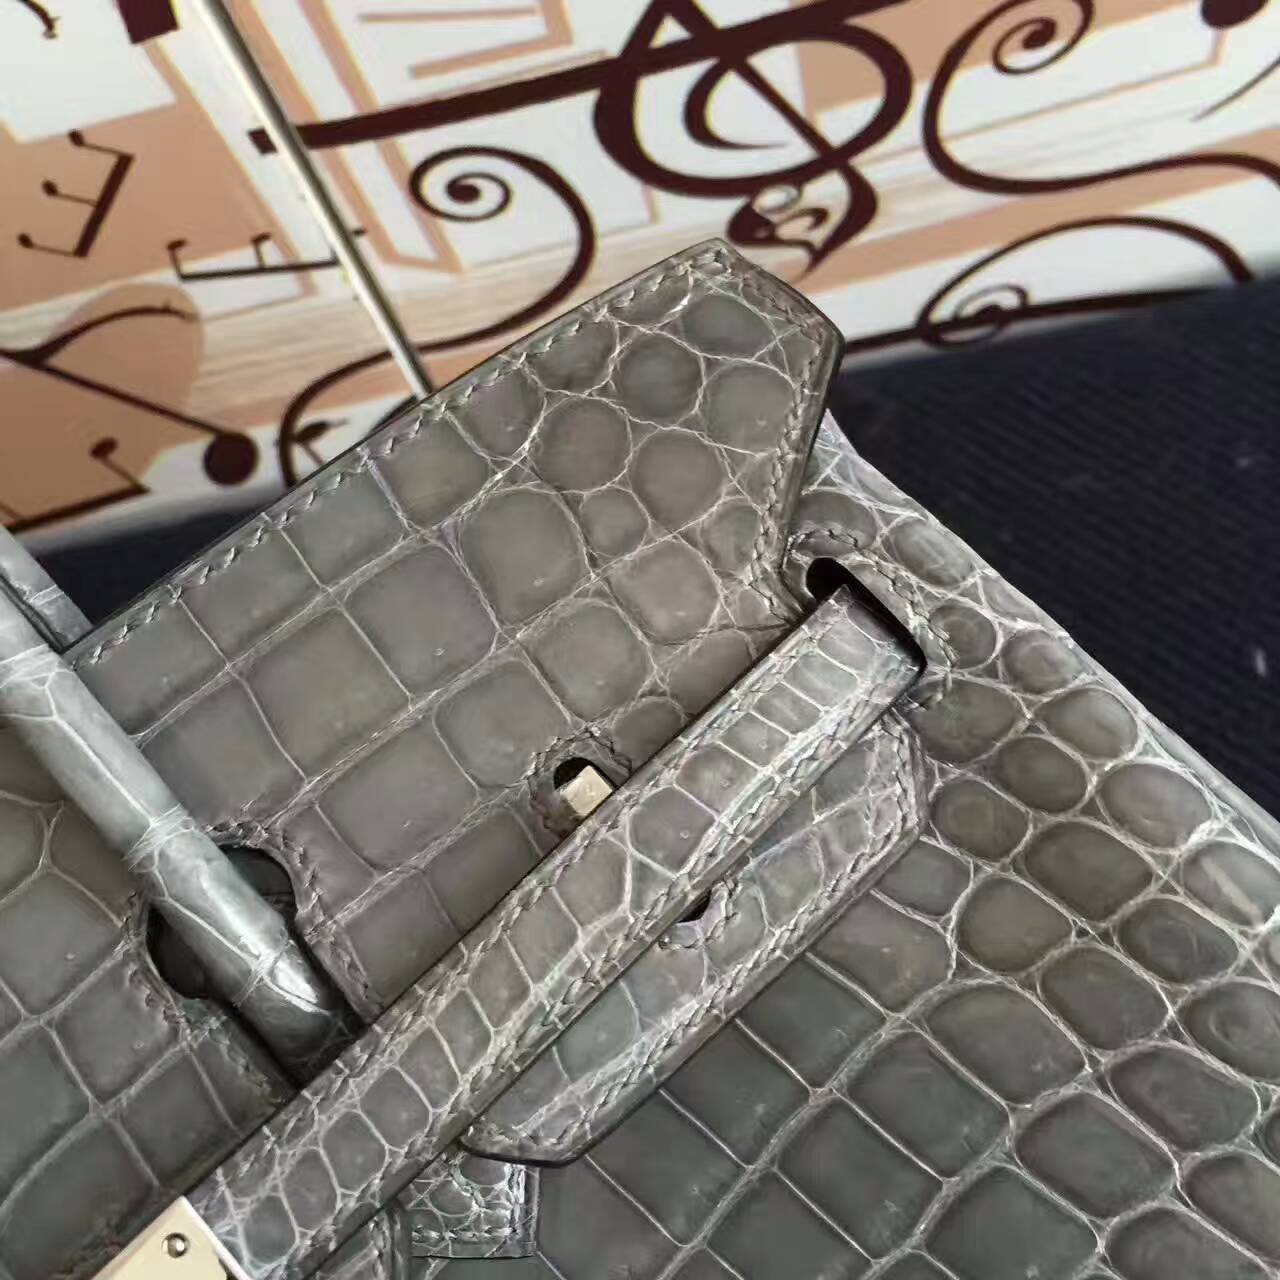 New Arrival Hermes 8M Gris Paris Crocodile Shiny Leather Birkin Bag 25cm